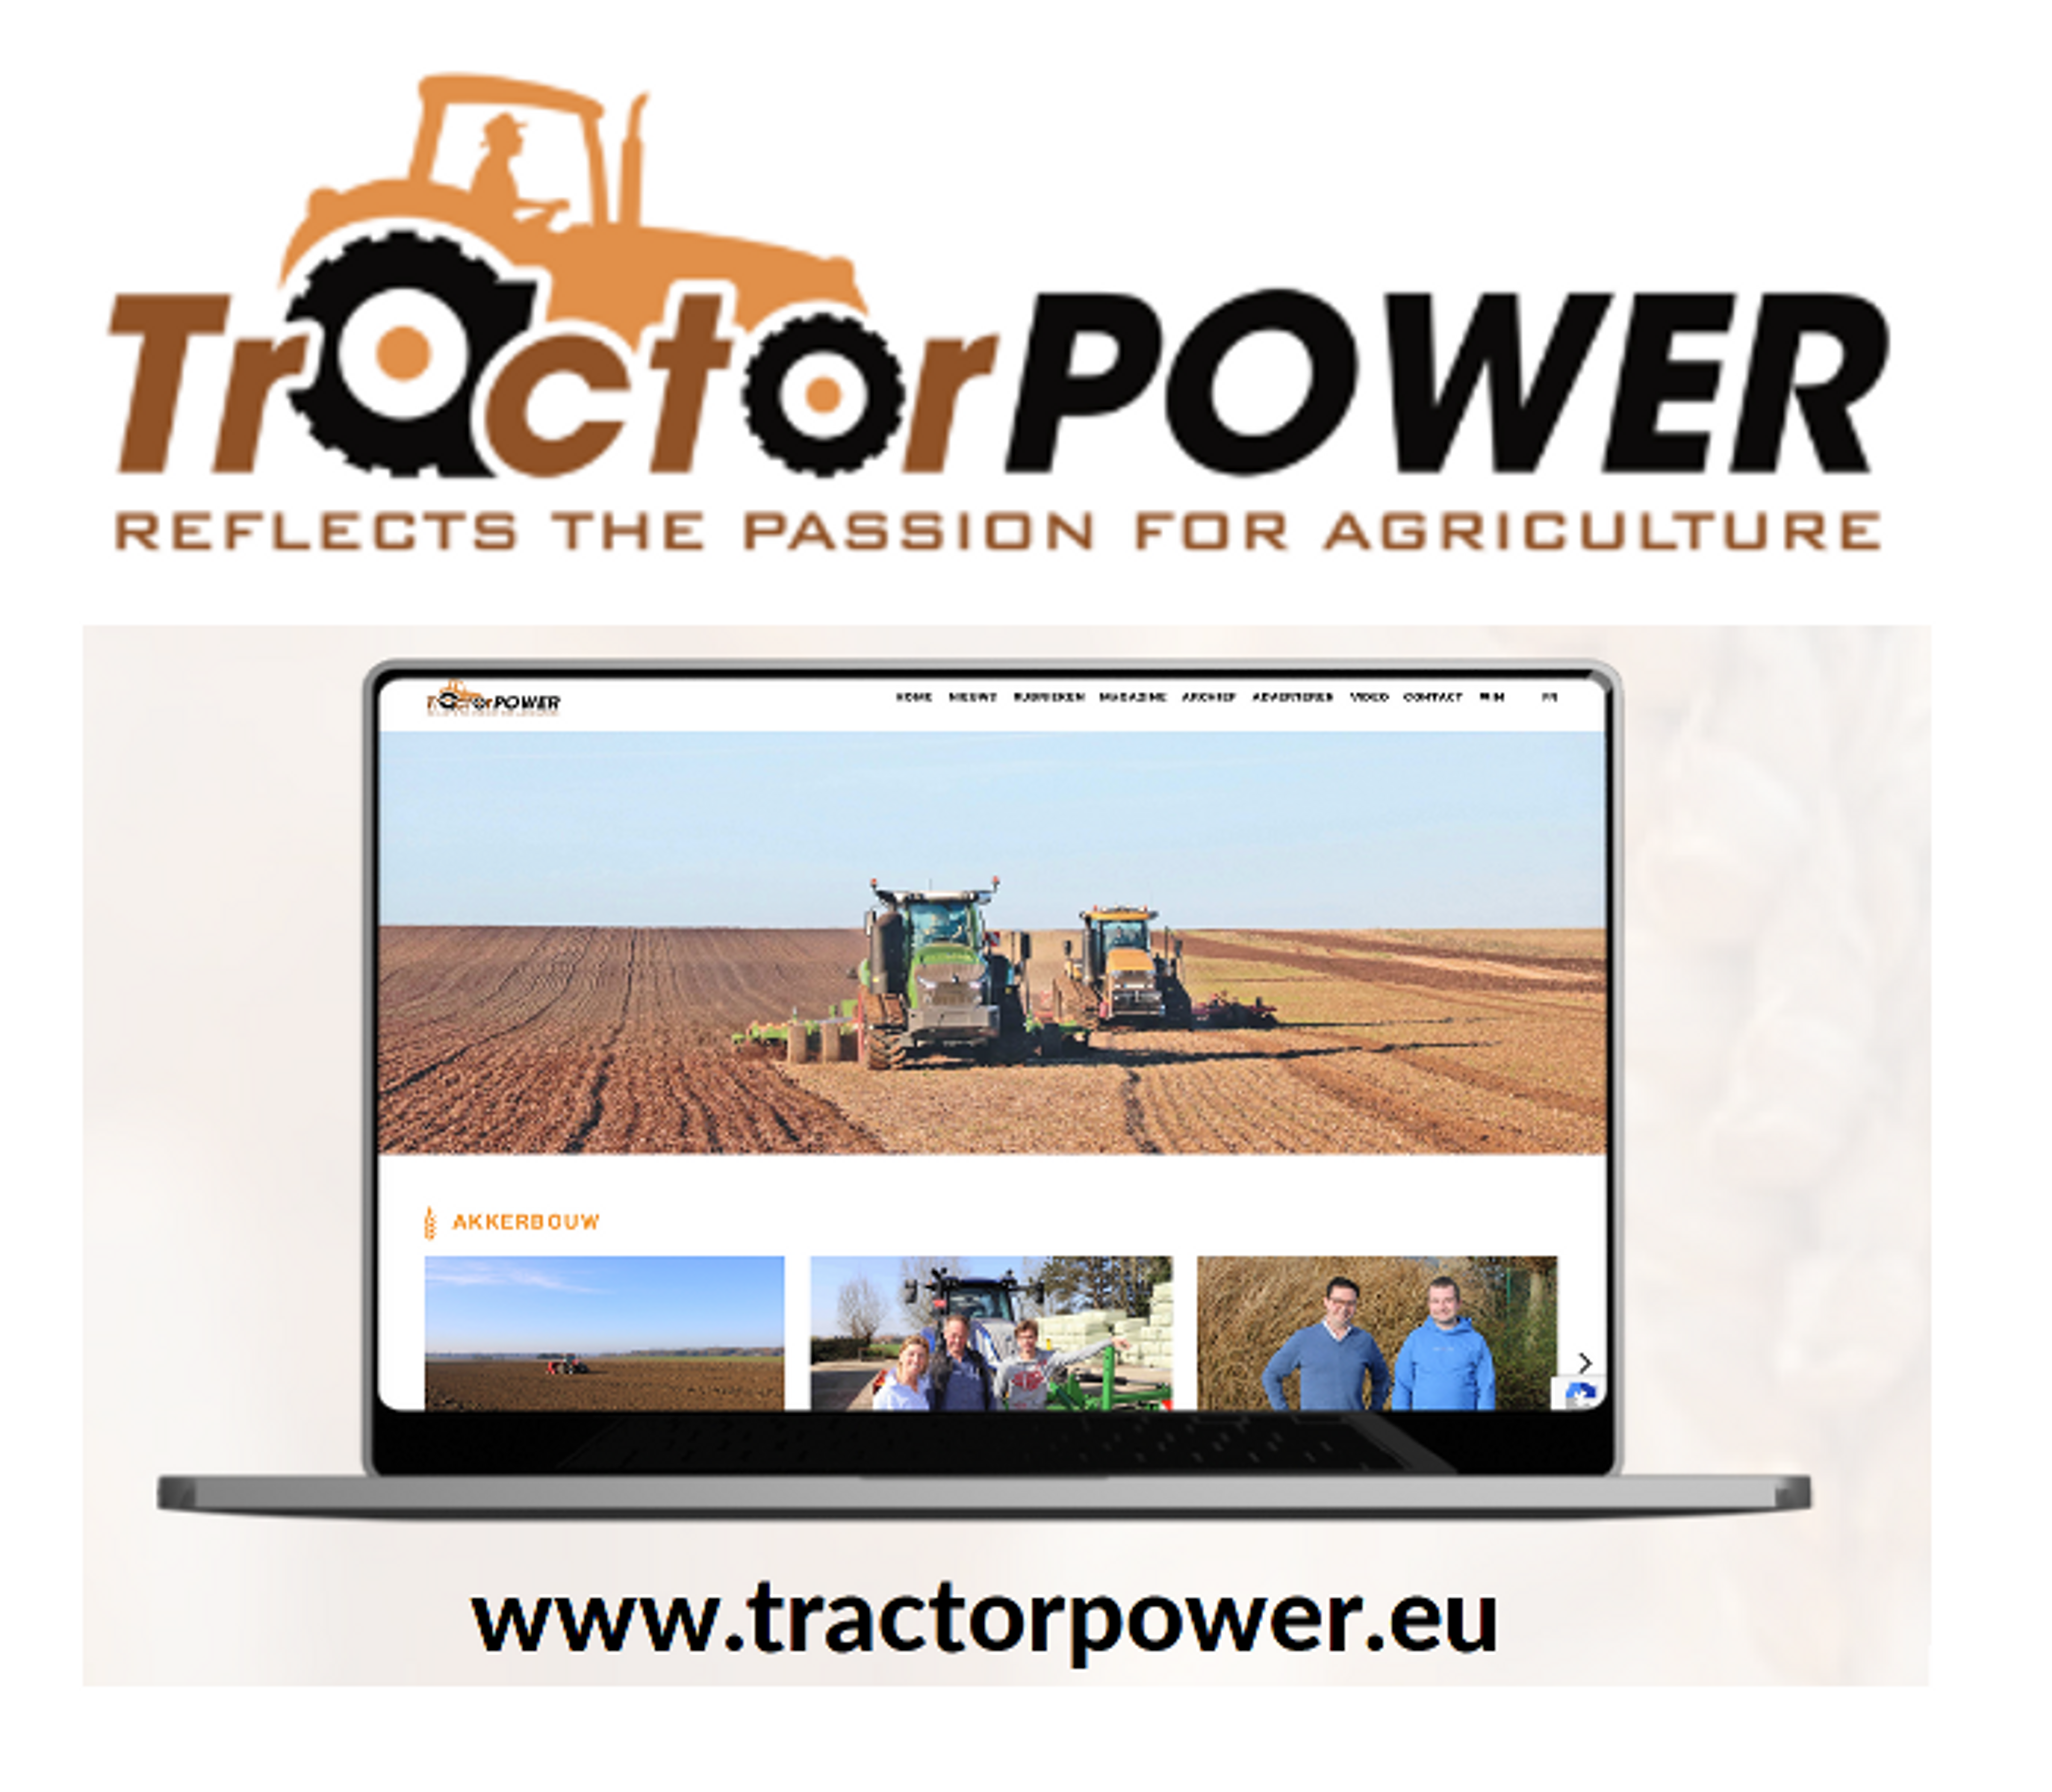 tractorpower.eu